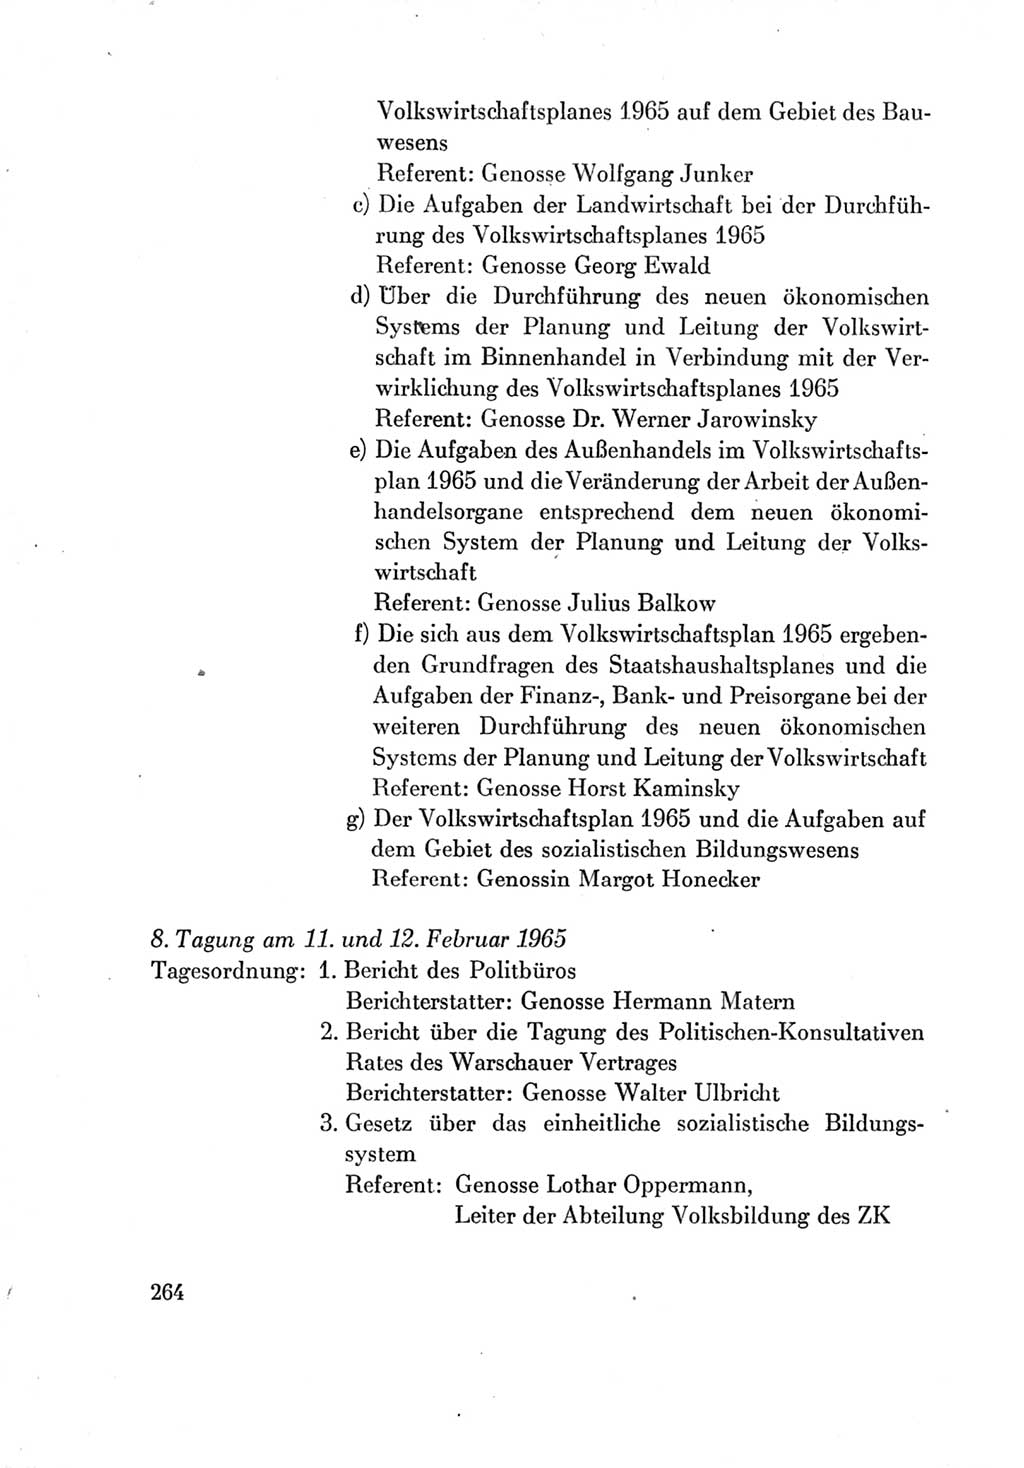 Protokoll der Verhandlungen des Ⅶ. Parteitages der Sozialistischen Einheitspartei Deutschlands (SED) [Deutsche Demokratische Republik (DDR)] 1967, Band Ⅳ, Seite 264 (Prot. Verh. Ⅶ. PT SED DDR 1967, Bd. Ⅳ, S. 264)